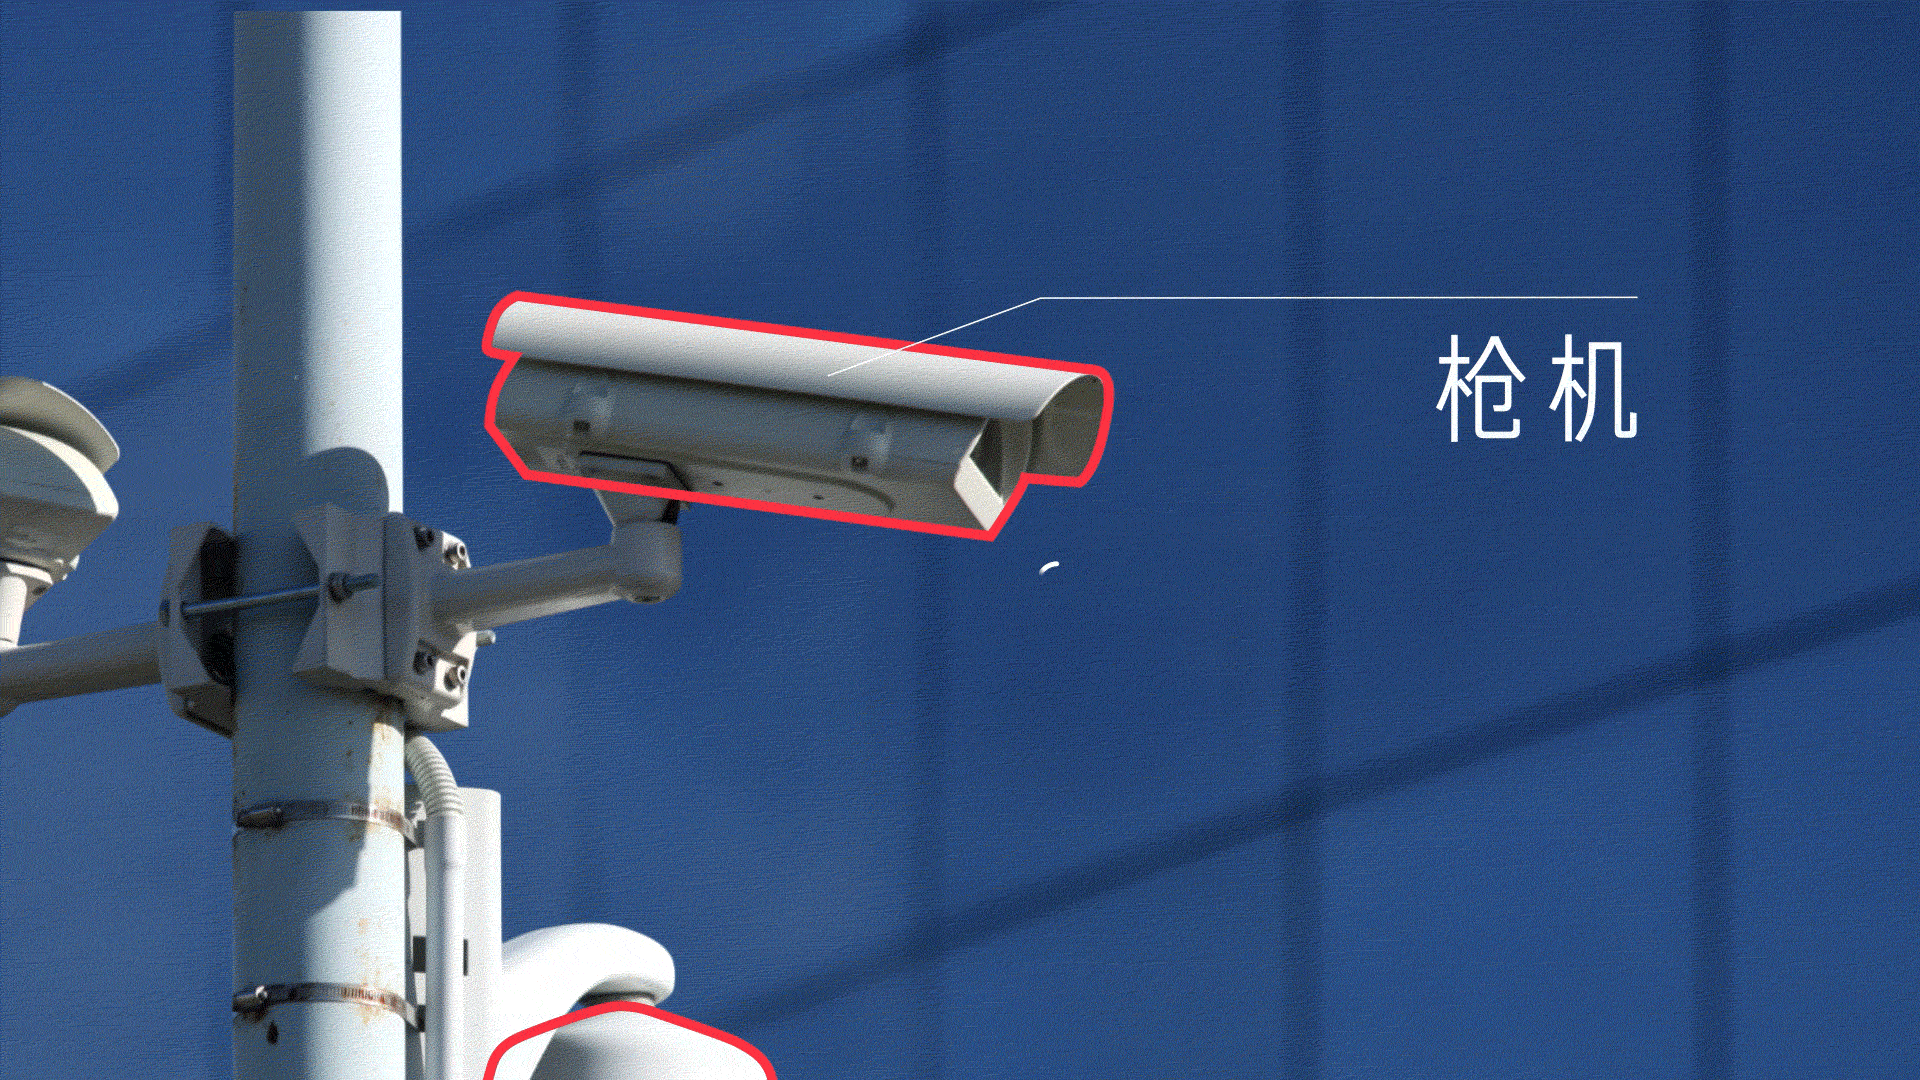 摄像头如何监控梁平93万人?中国安装了 1.76 亿个监控